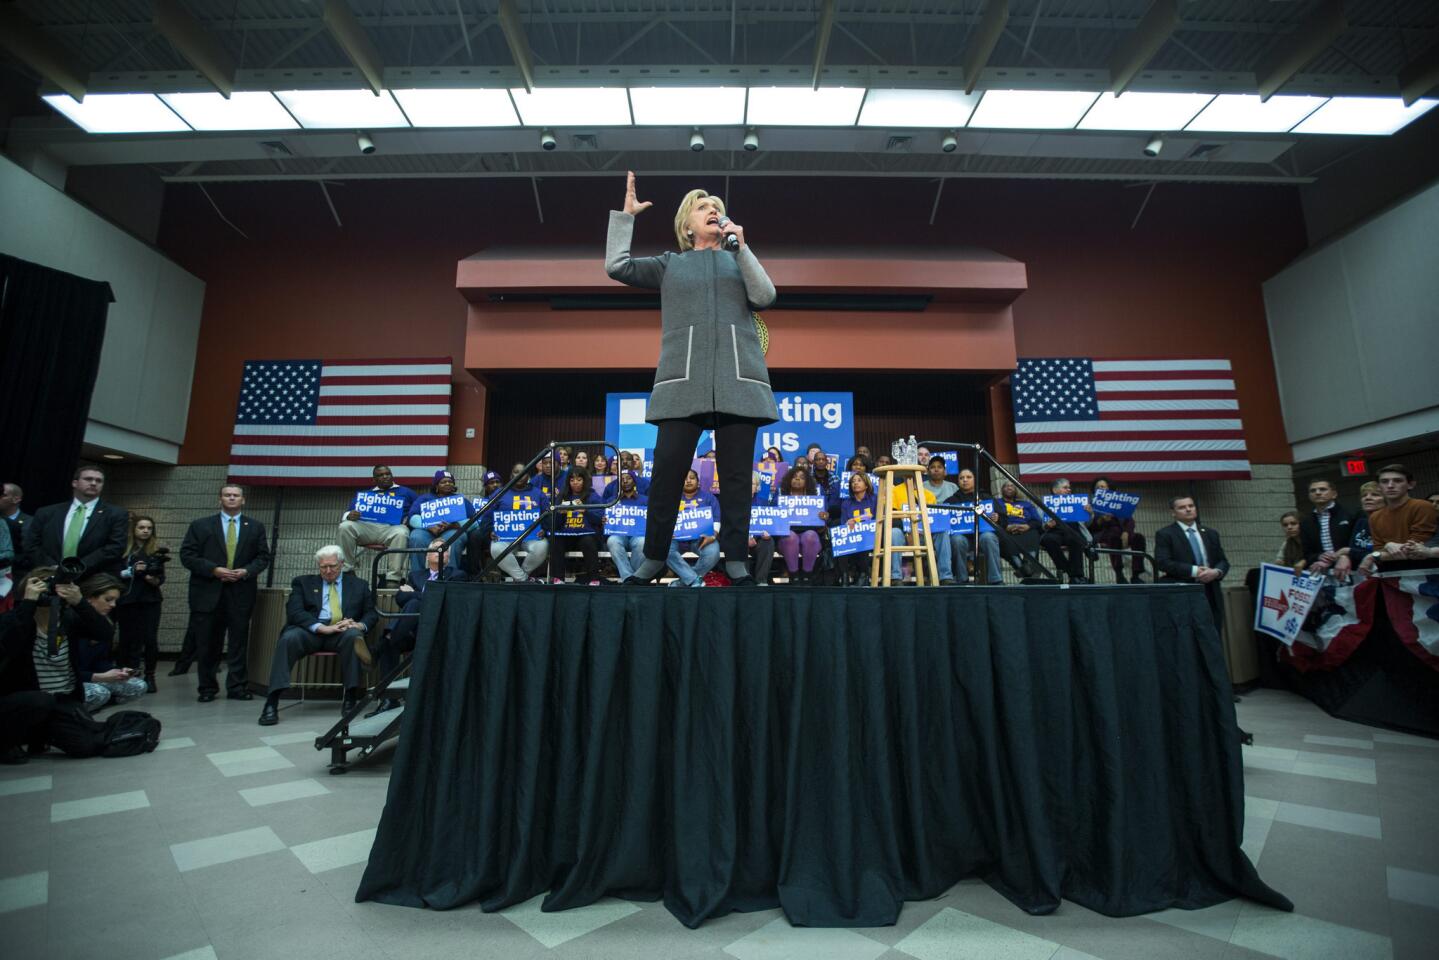 Clinton campaigns in Virginia